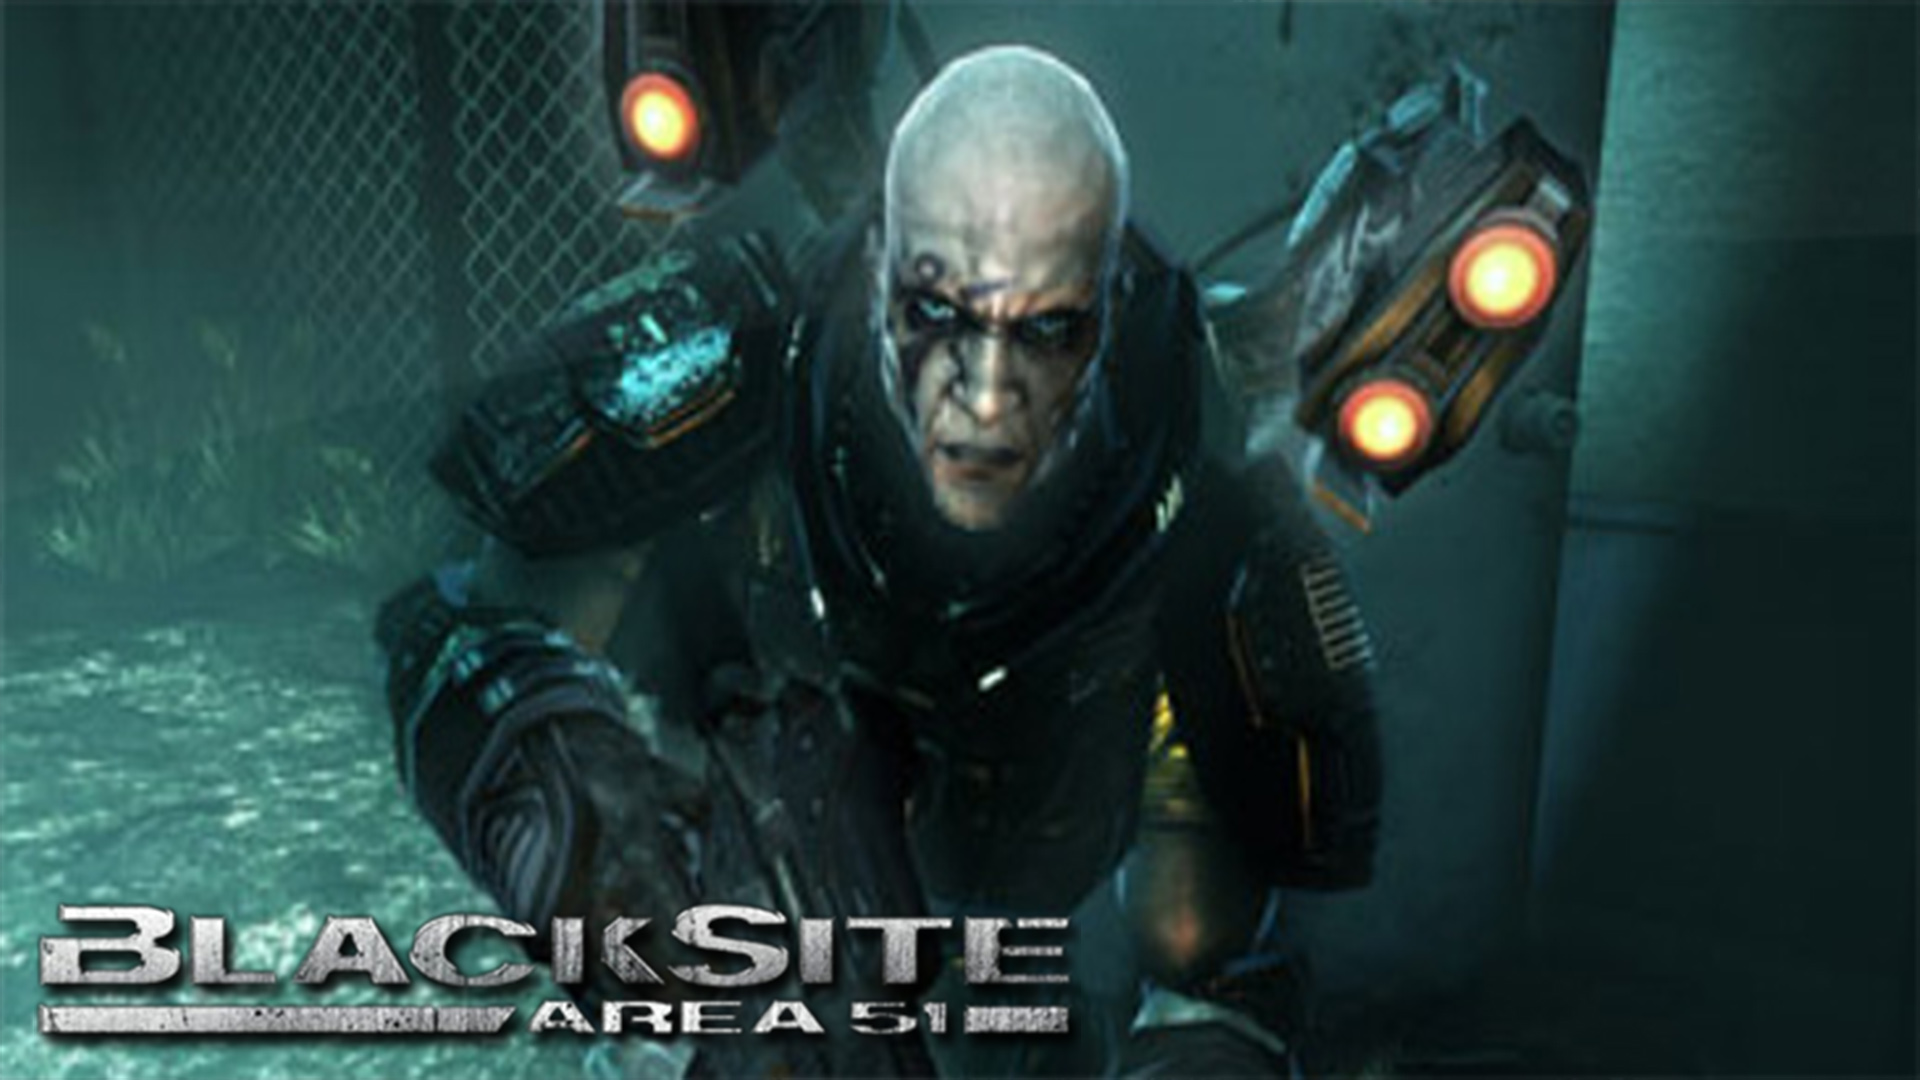 BlackSite: Area 51 Steam Version Is Stolen, Per Developer Confession